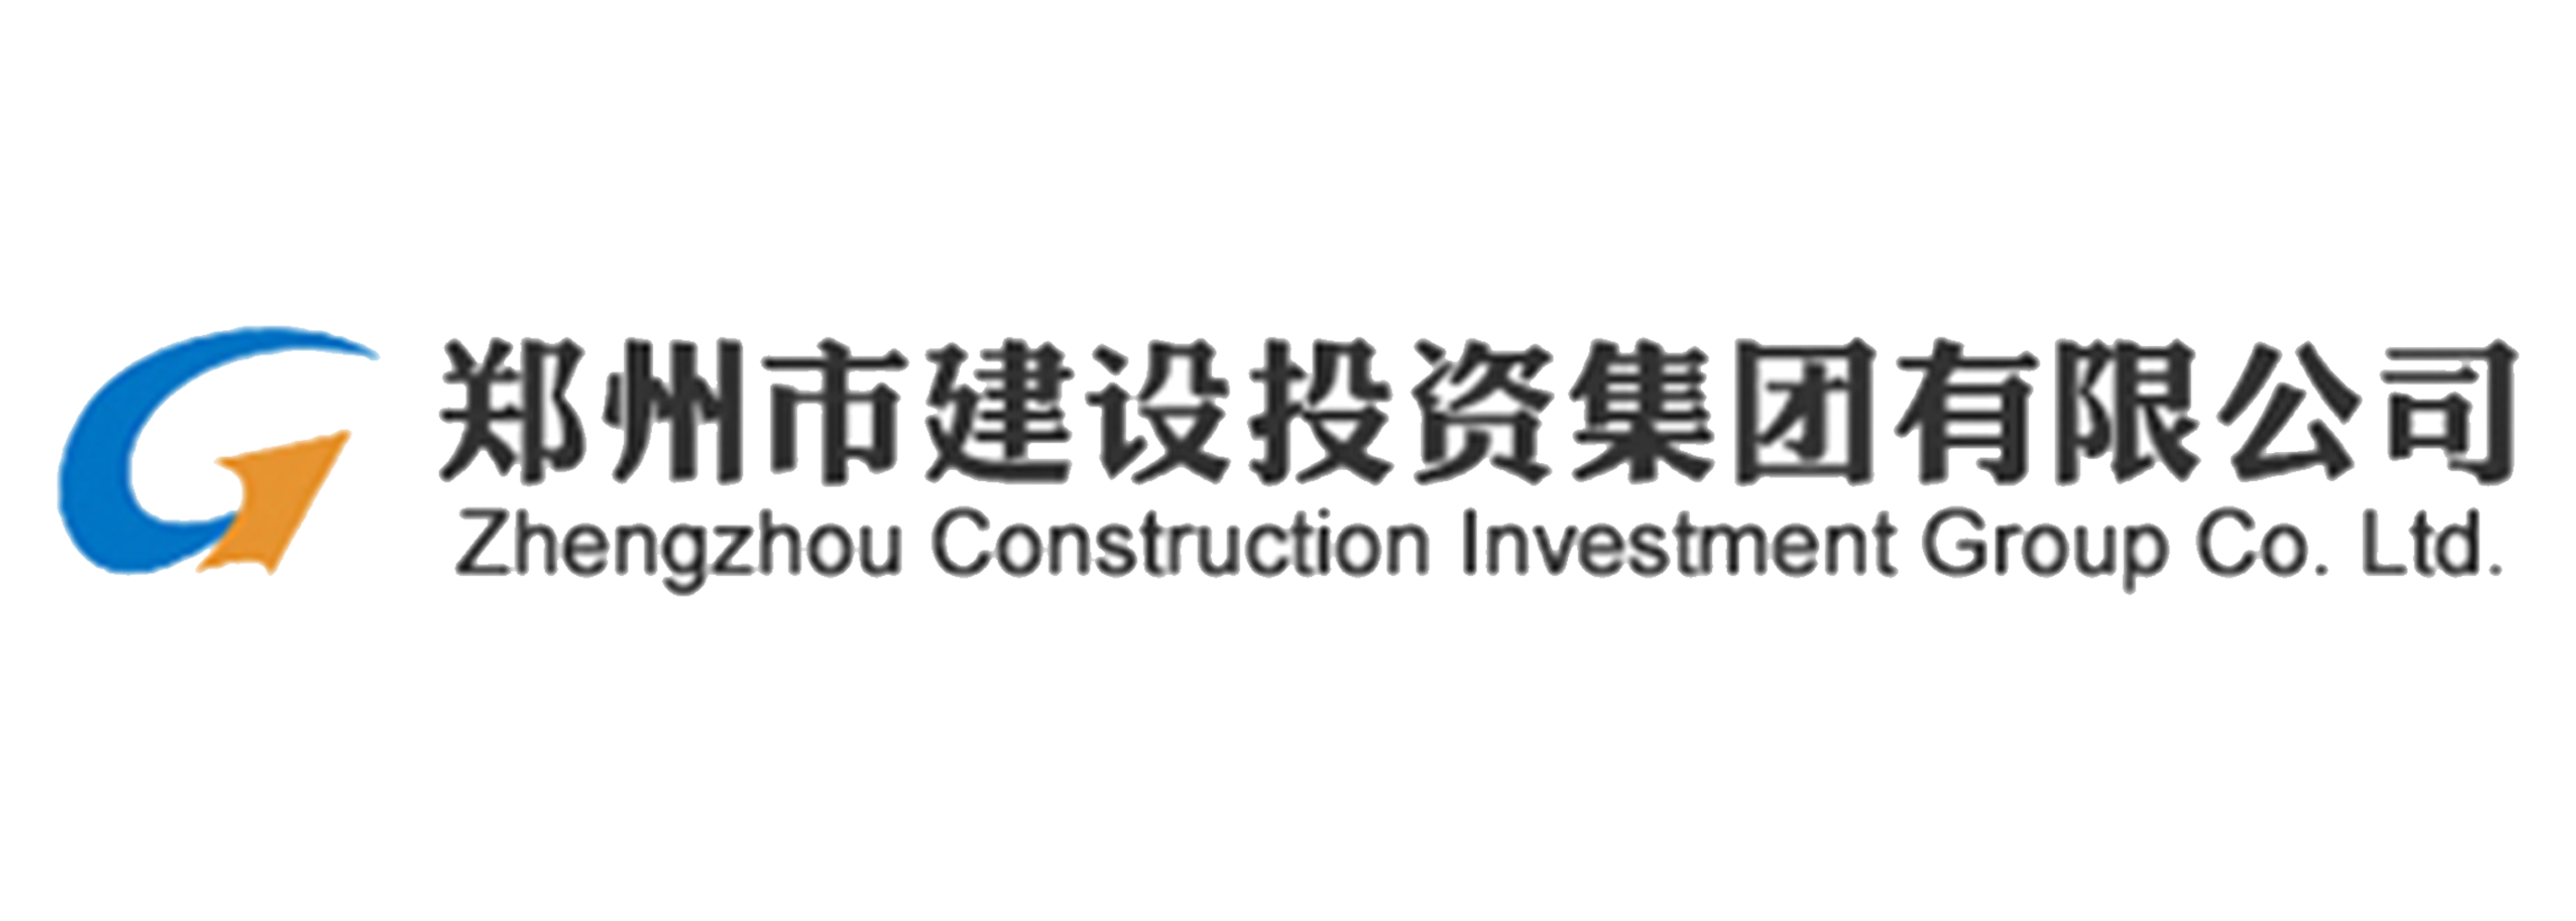 郑州市建设投资集团有限公司